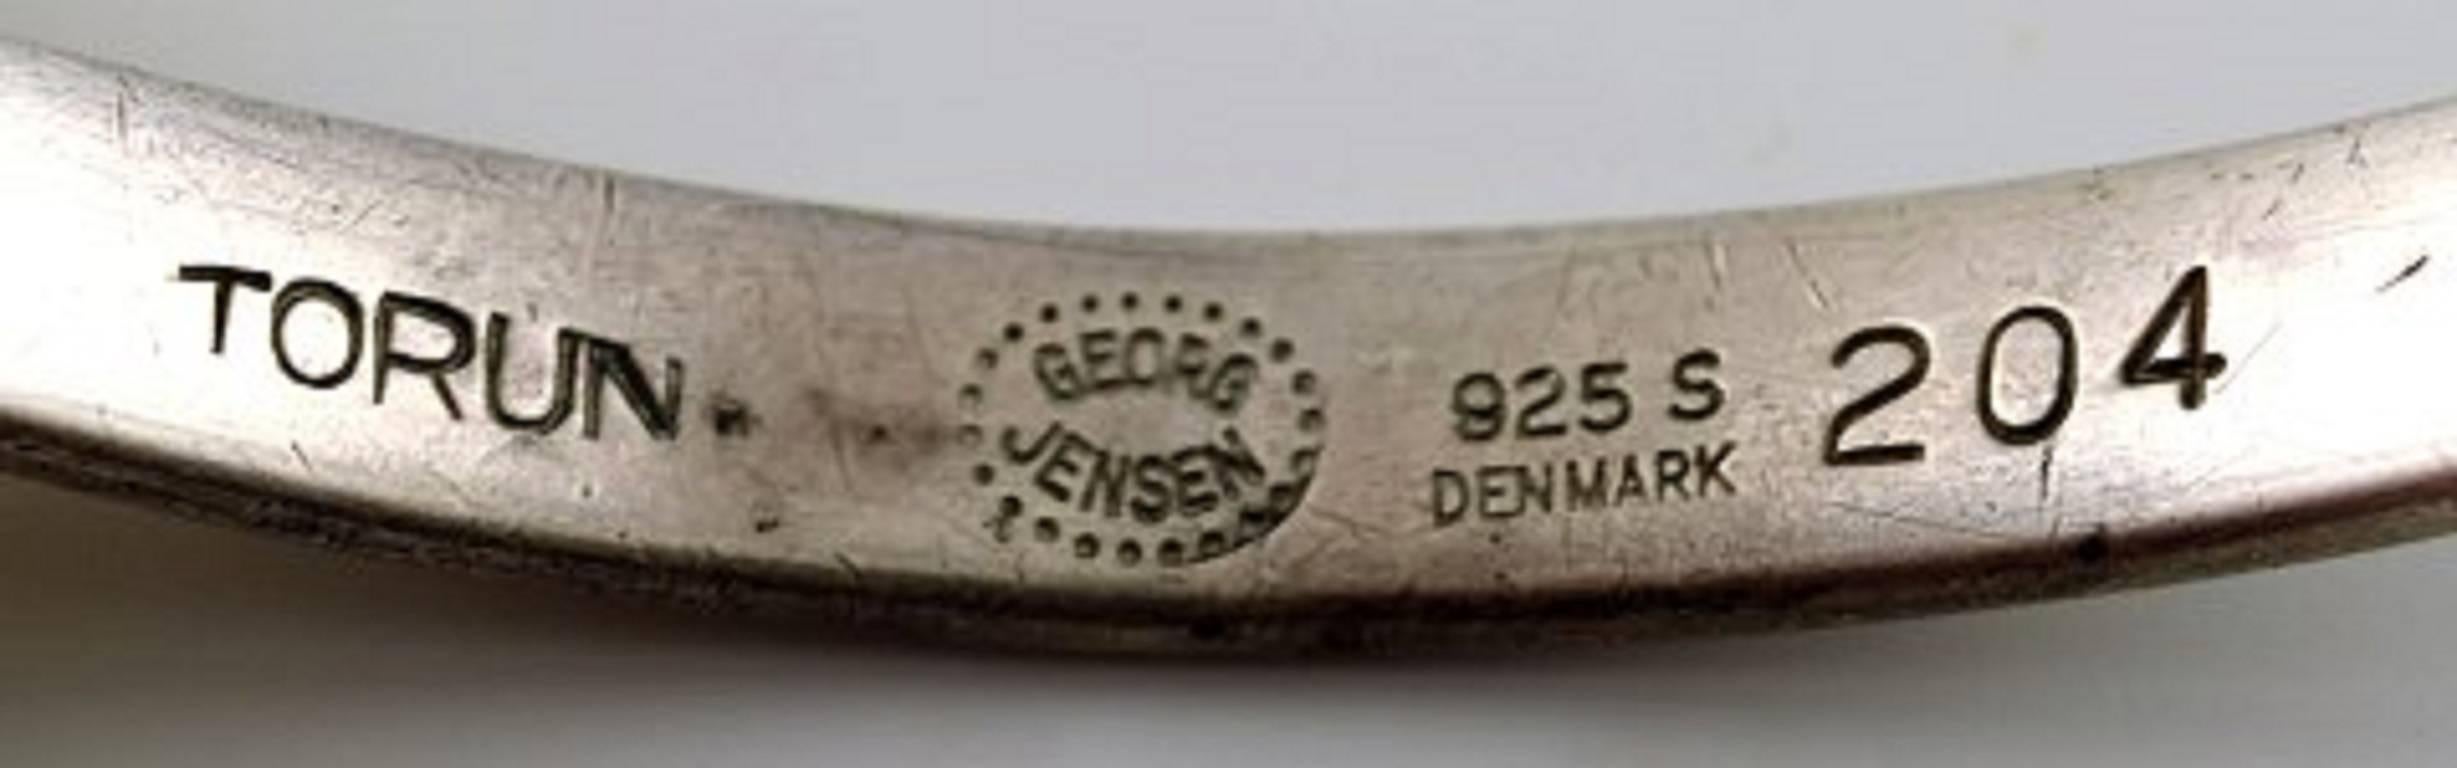 Modern Bracelet in Sterling Silver, Designed by Torun Bülow Hübe for Georg Jensen